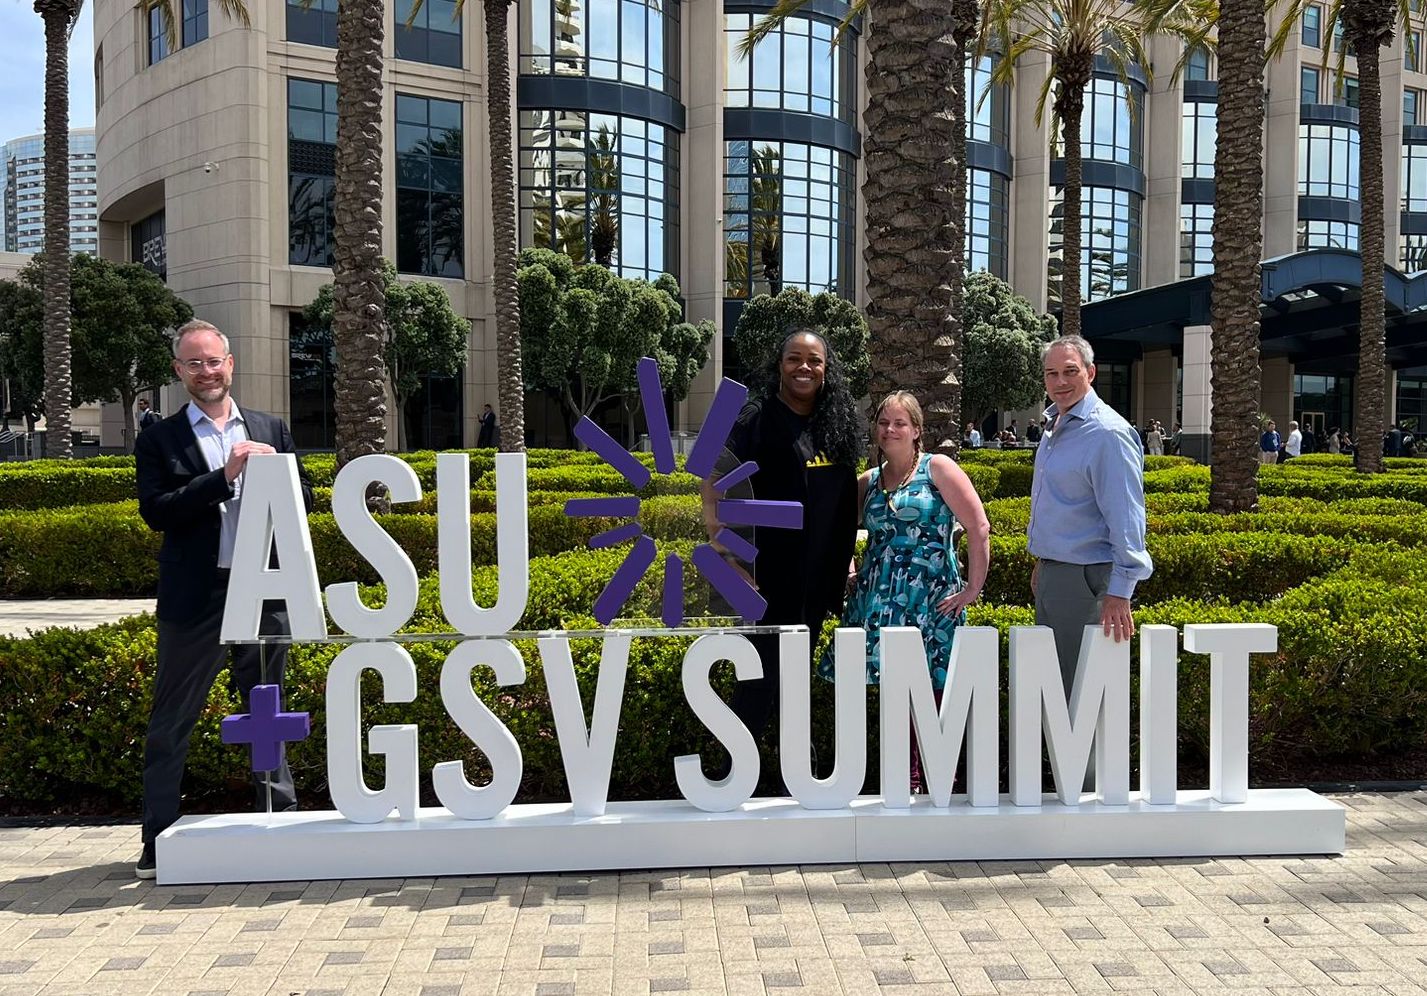 At ASU+GSV Summit